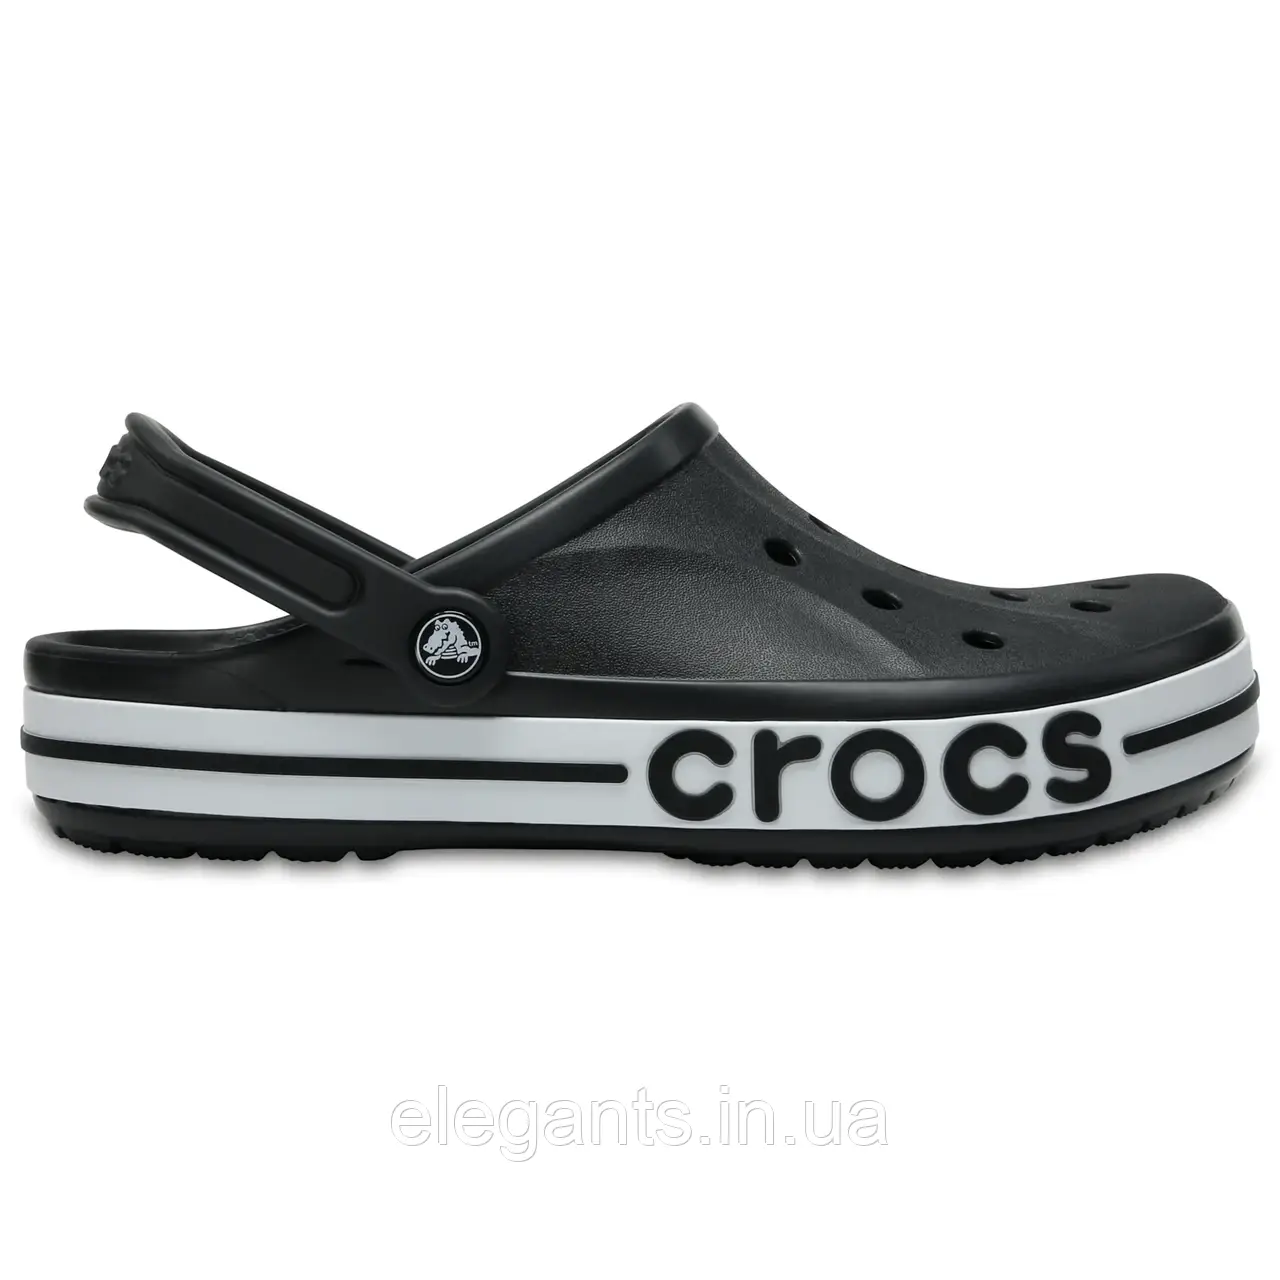 Crocs Bayaband Clog Black/White Чоловічі Жіночі Саба Крокс Боябенд Чорно-білі